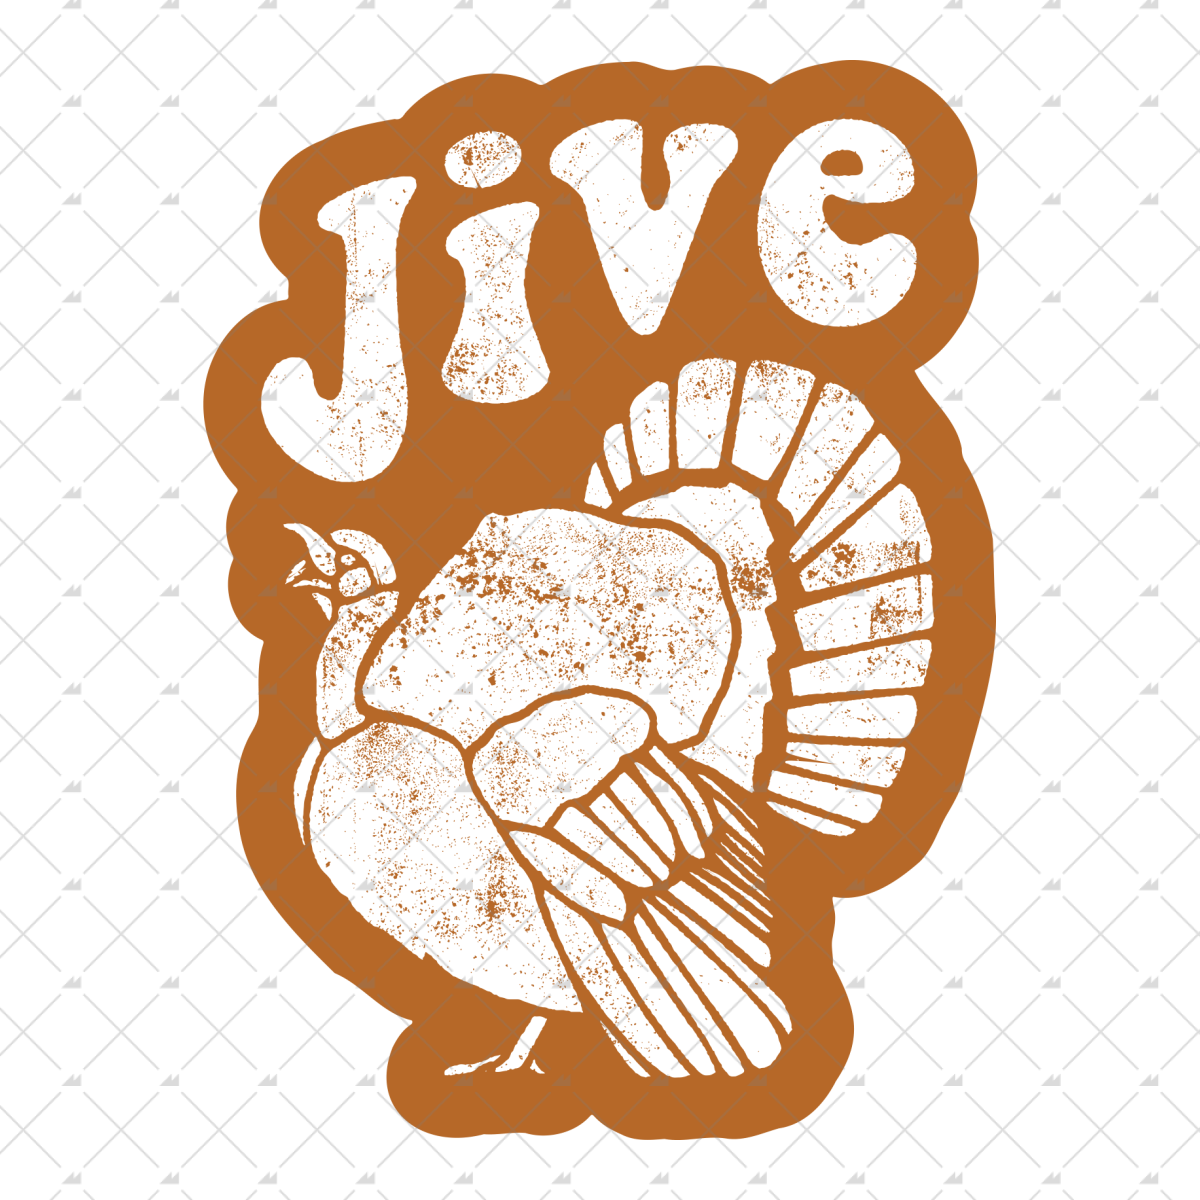 Jive Turkey - Sticker